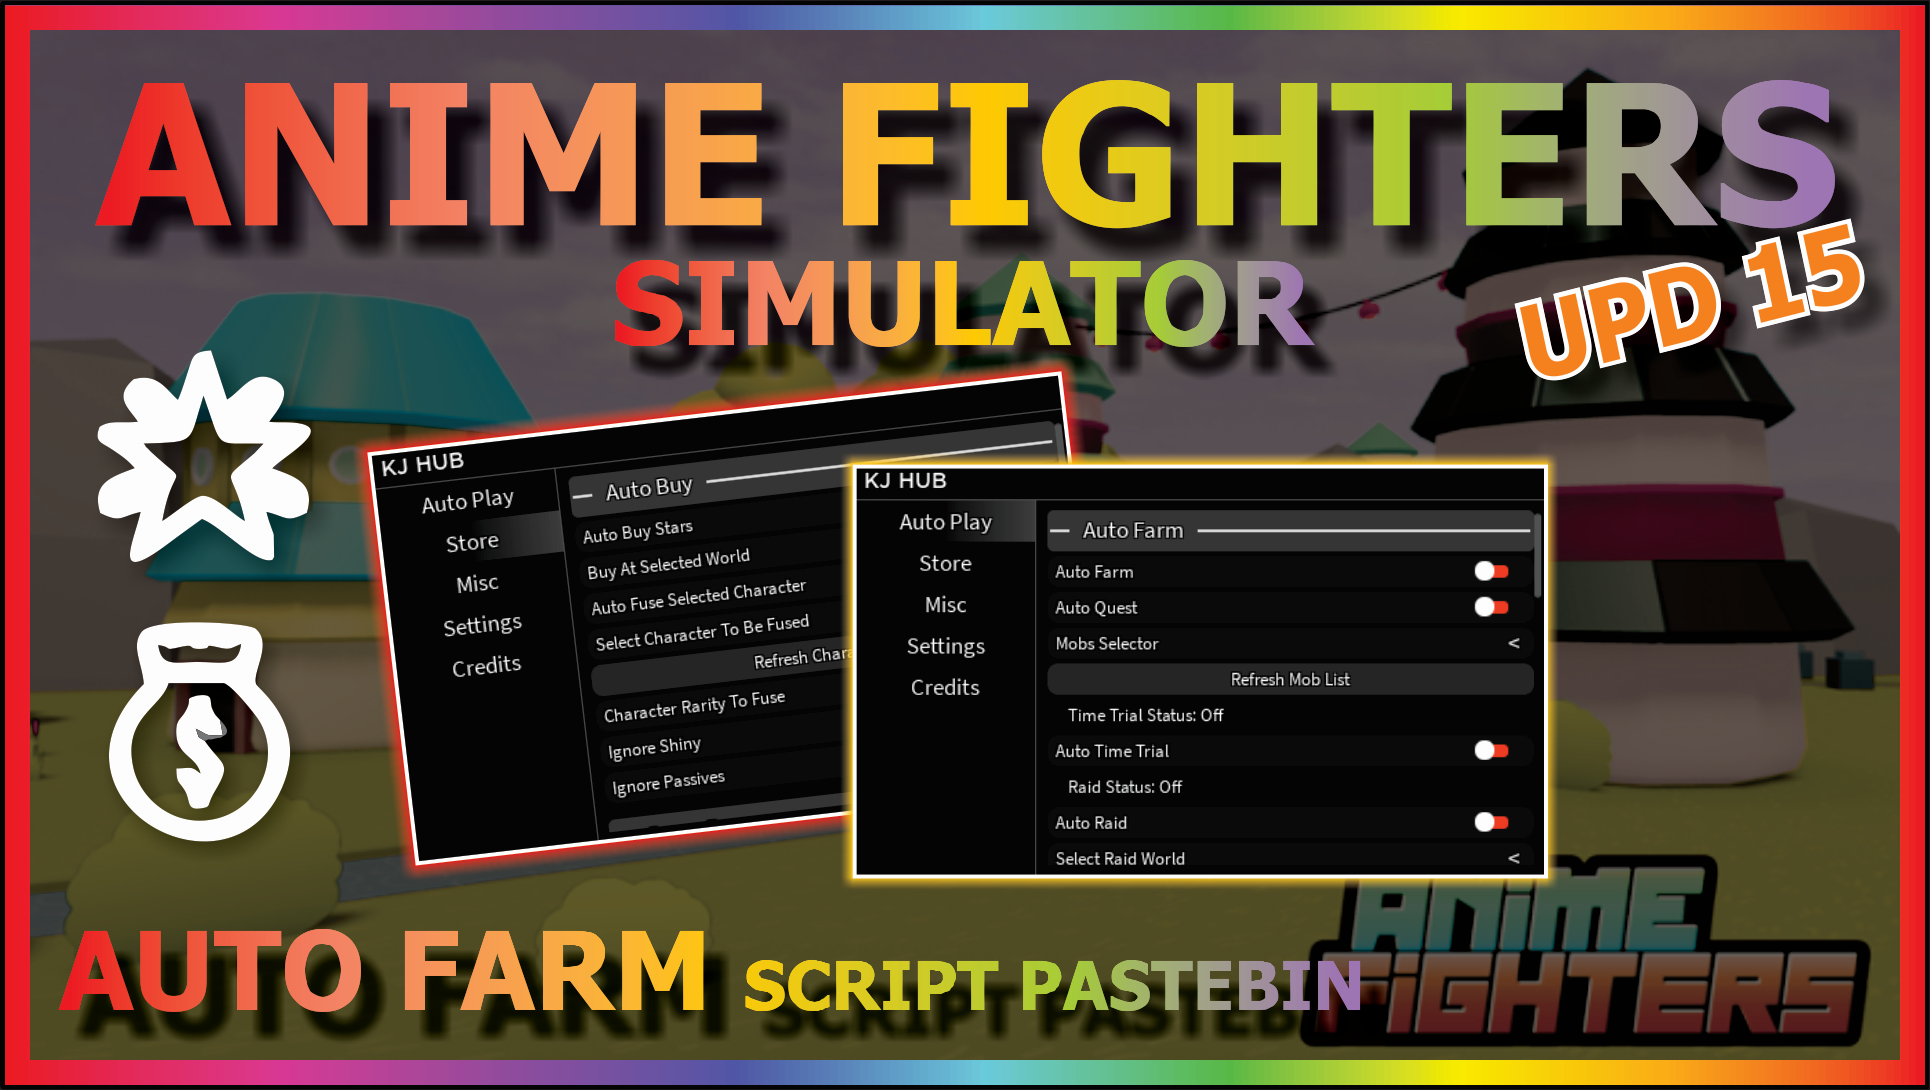 Anime Fighters Simulator Script SSJ3 Hub - Auto Farm Menu